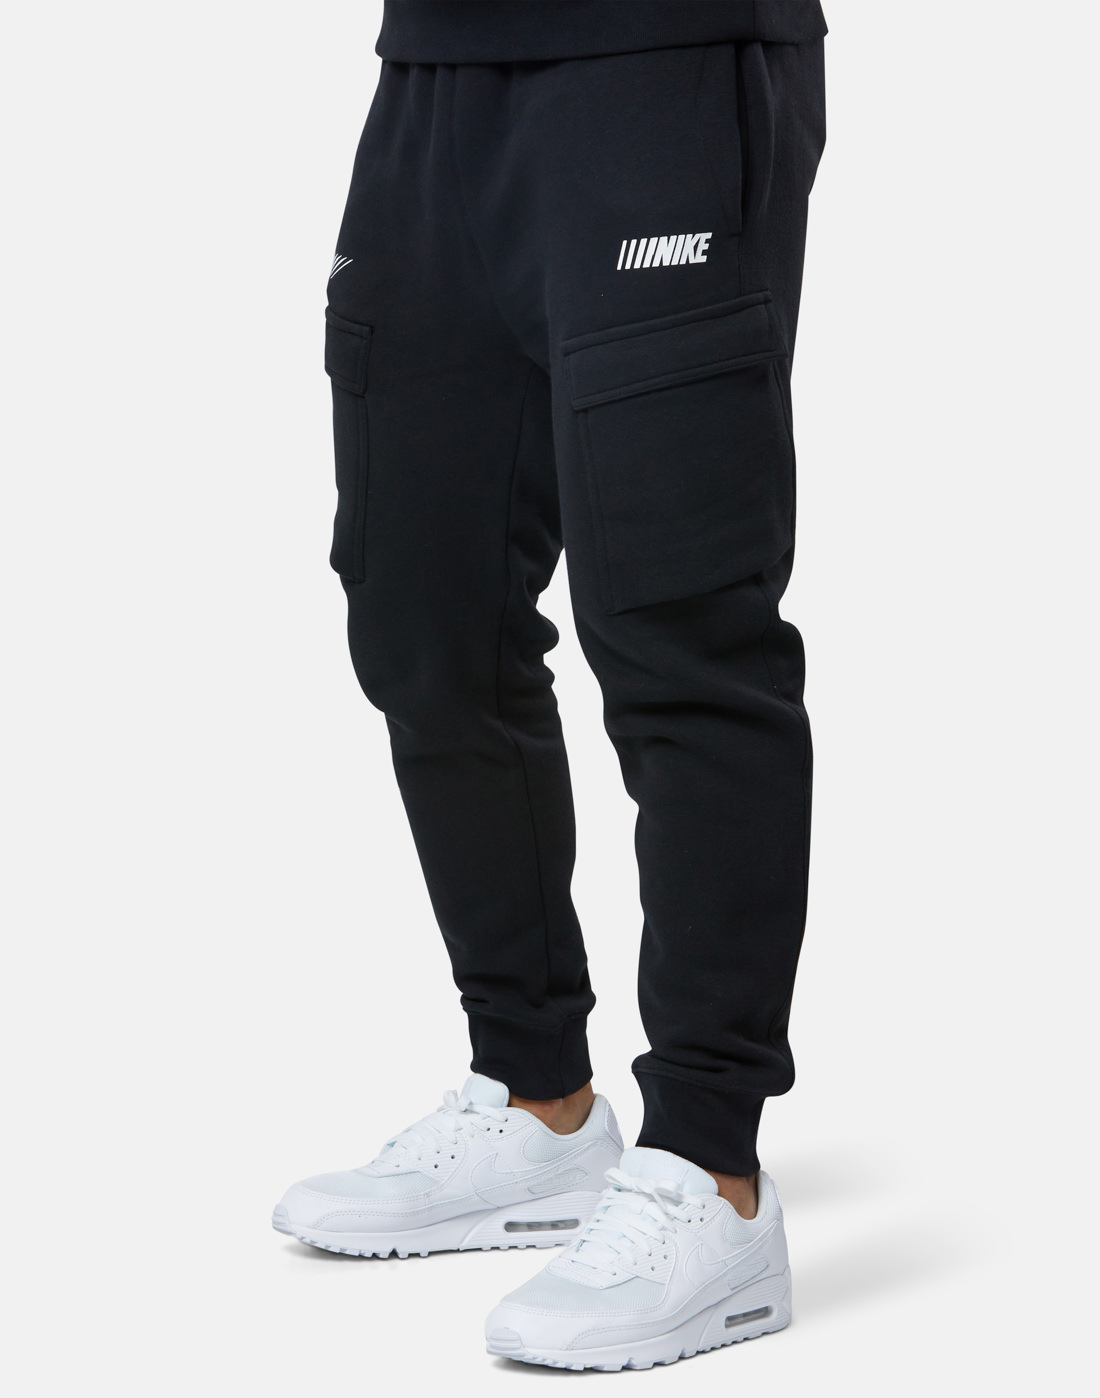 Nike Swoosh Logo Black Cargo Style Sweat Shorts Youth Size XS Made